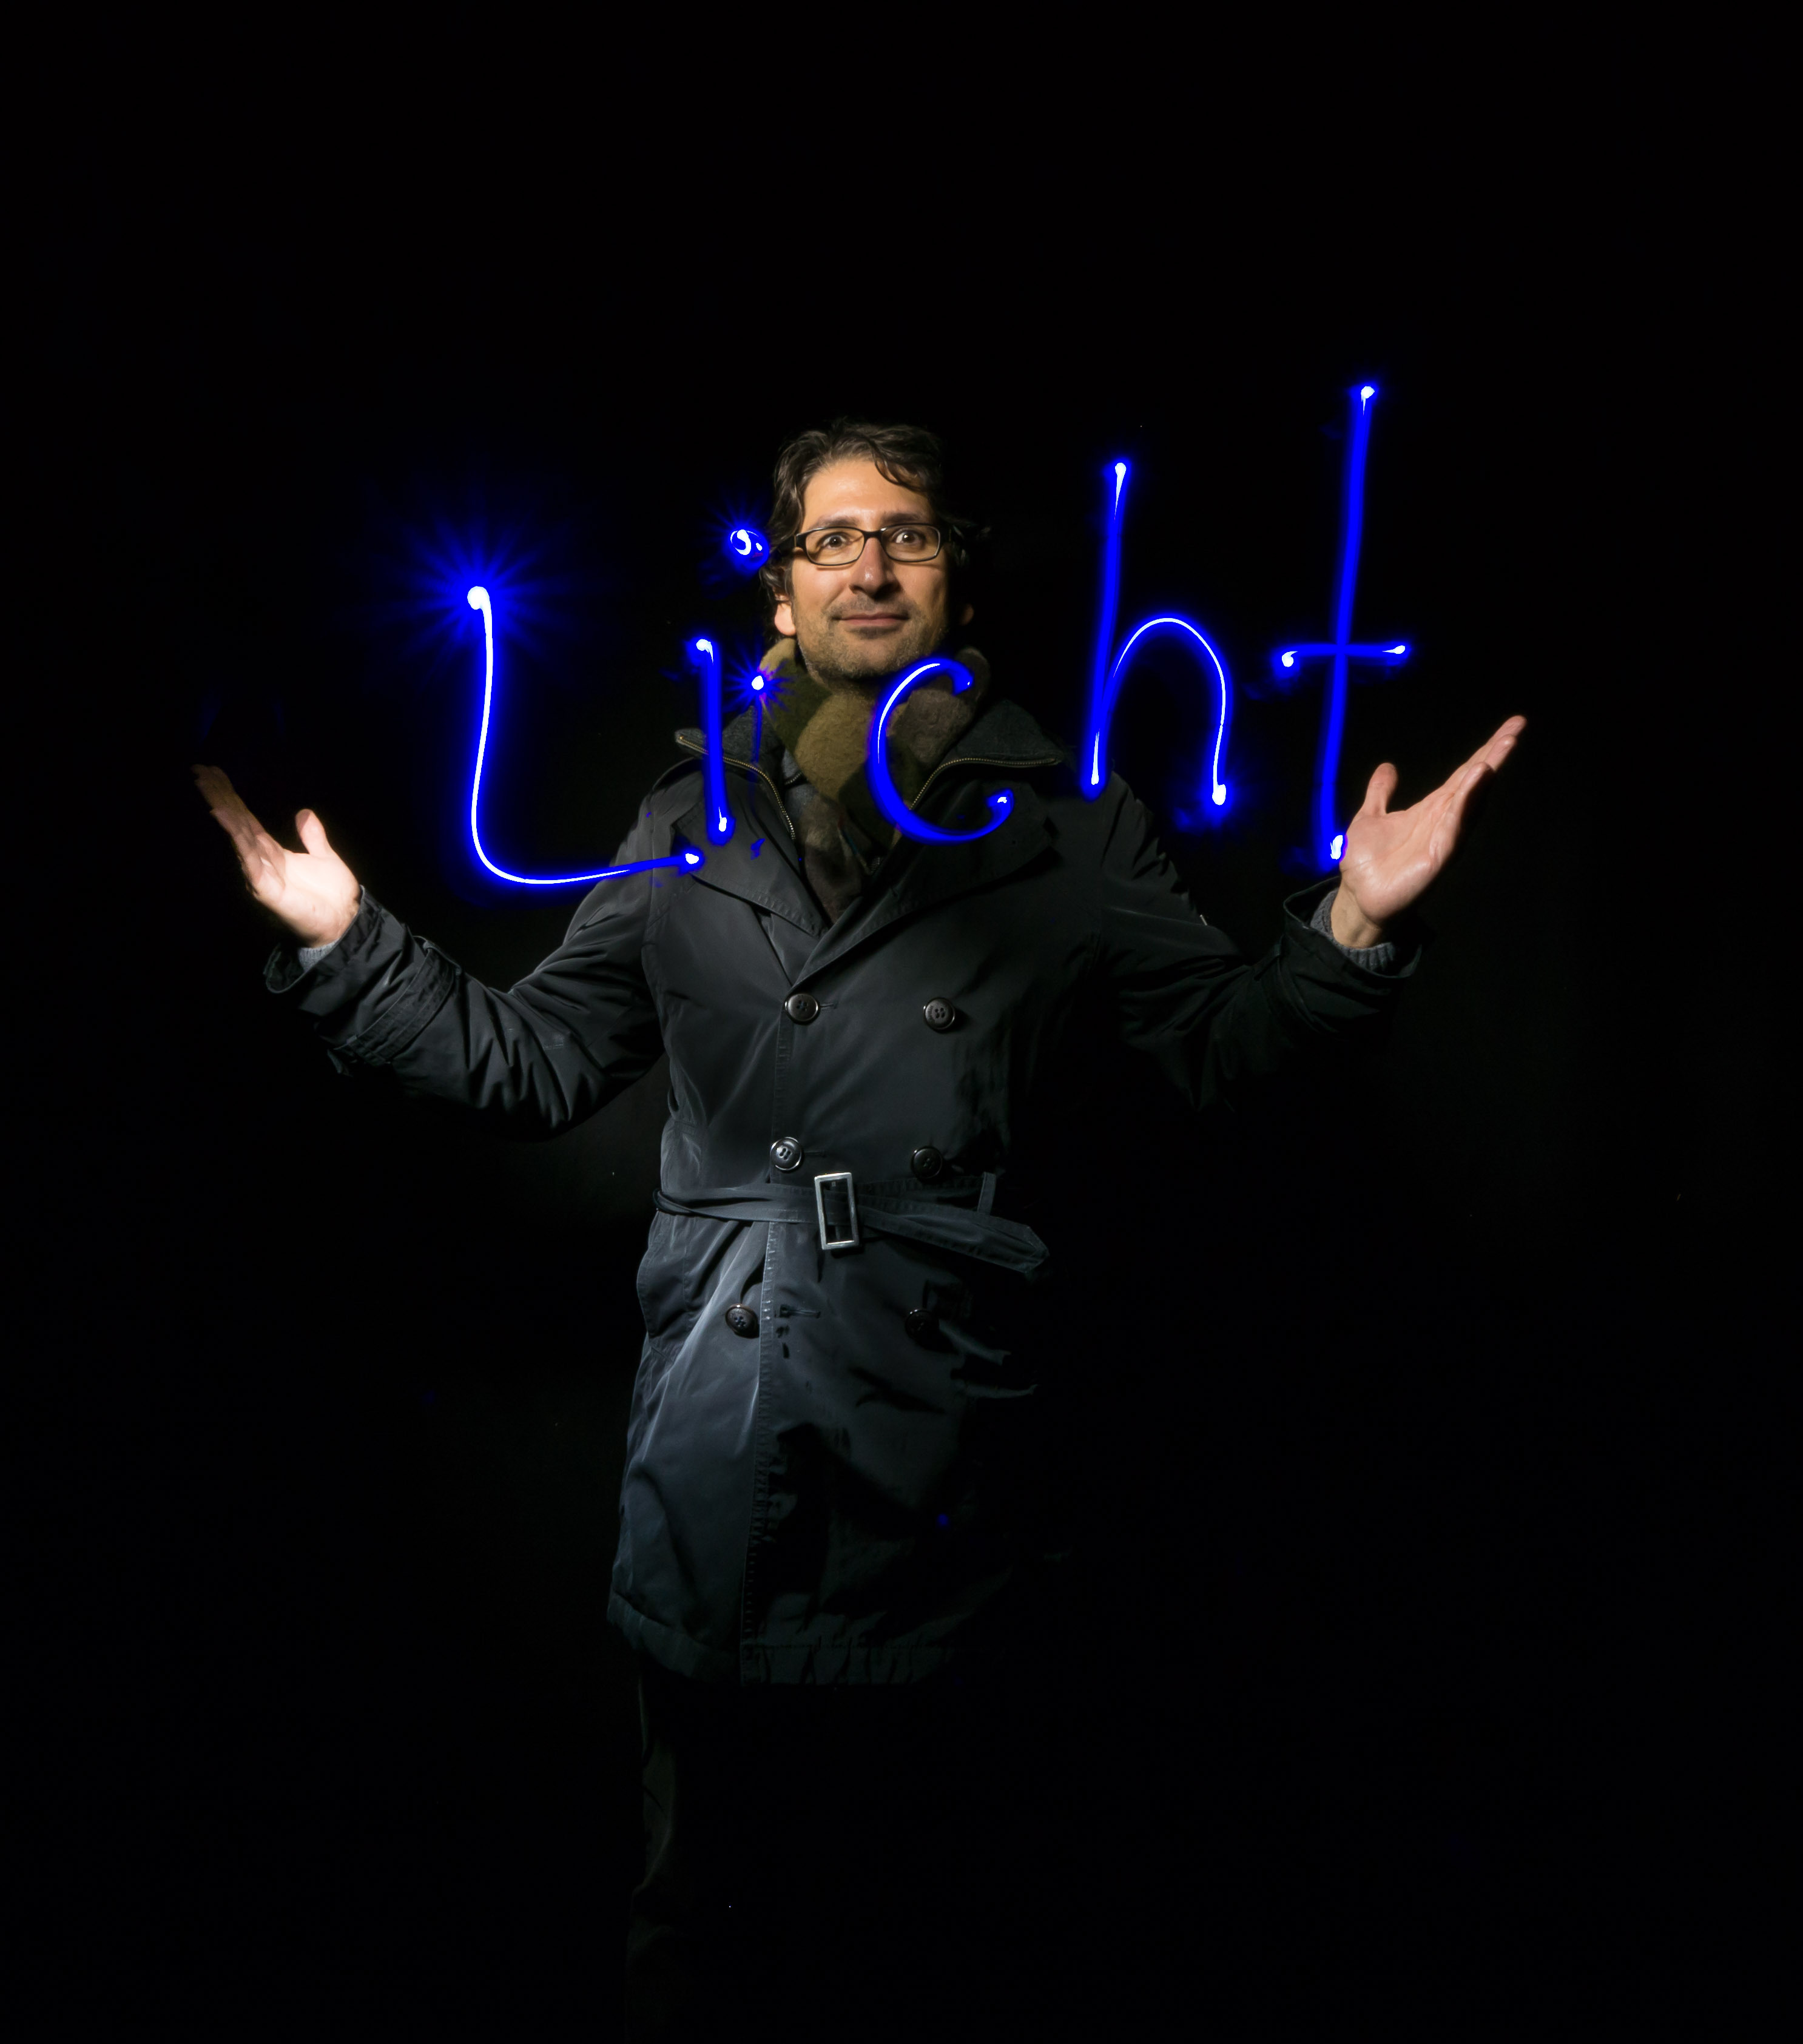 Bei der Abschlussfeier der Lichtwoche 2015 in München hat der Light Painting Künster Ulrich Tausend in einer interaktiven Performance mit den Besuchern mit Licht gemalt.